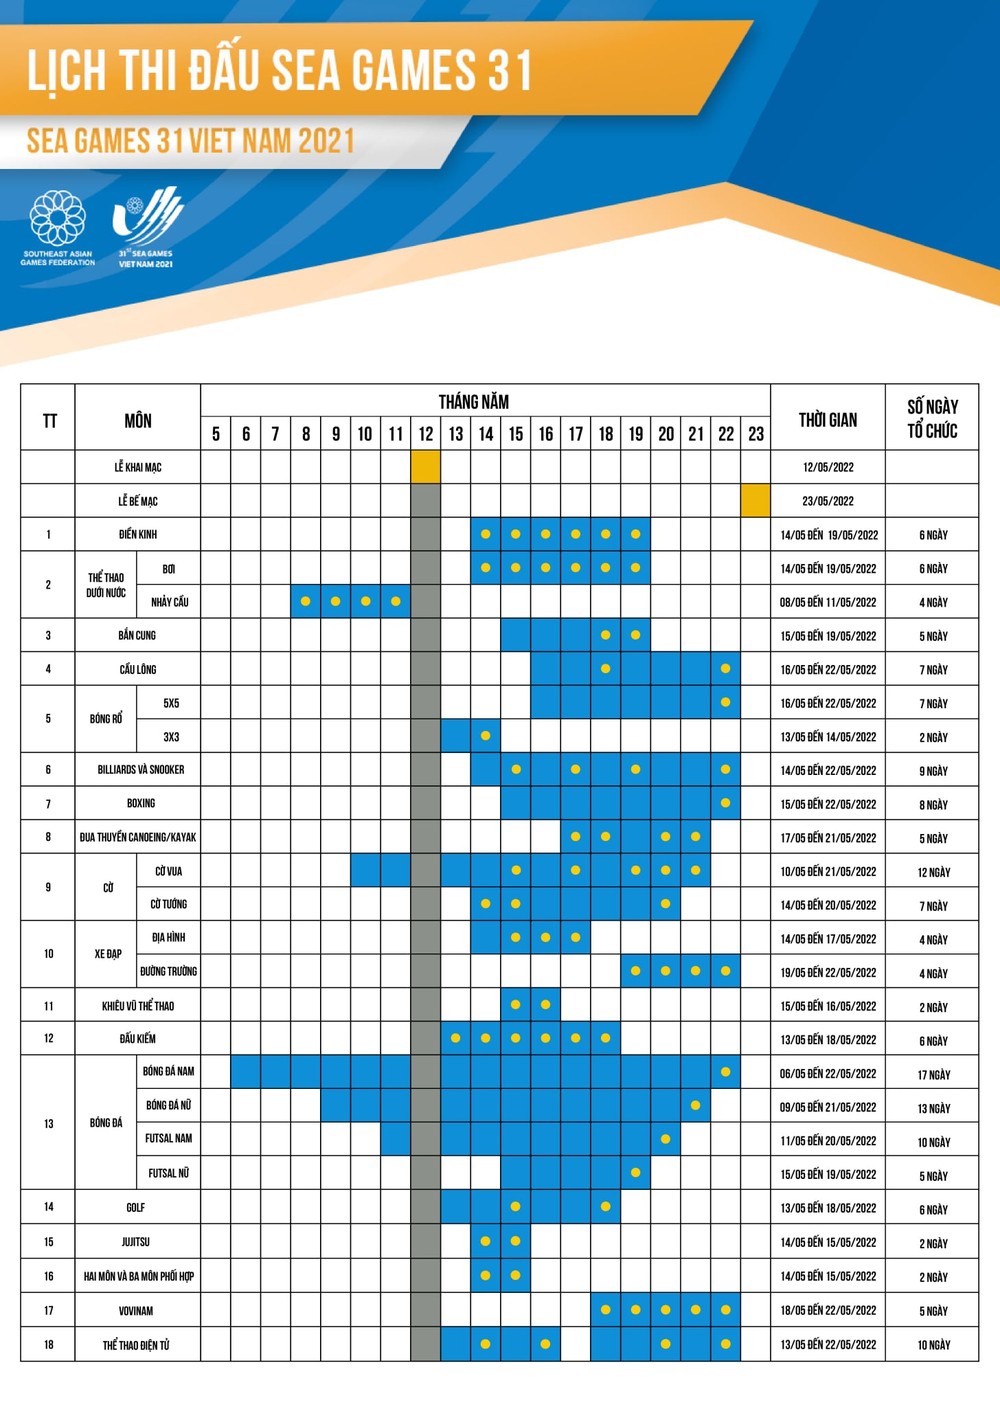 Toàn bộ lịch thi đấu SEA Games 31 tất cả các bộ môn thi đấu